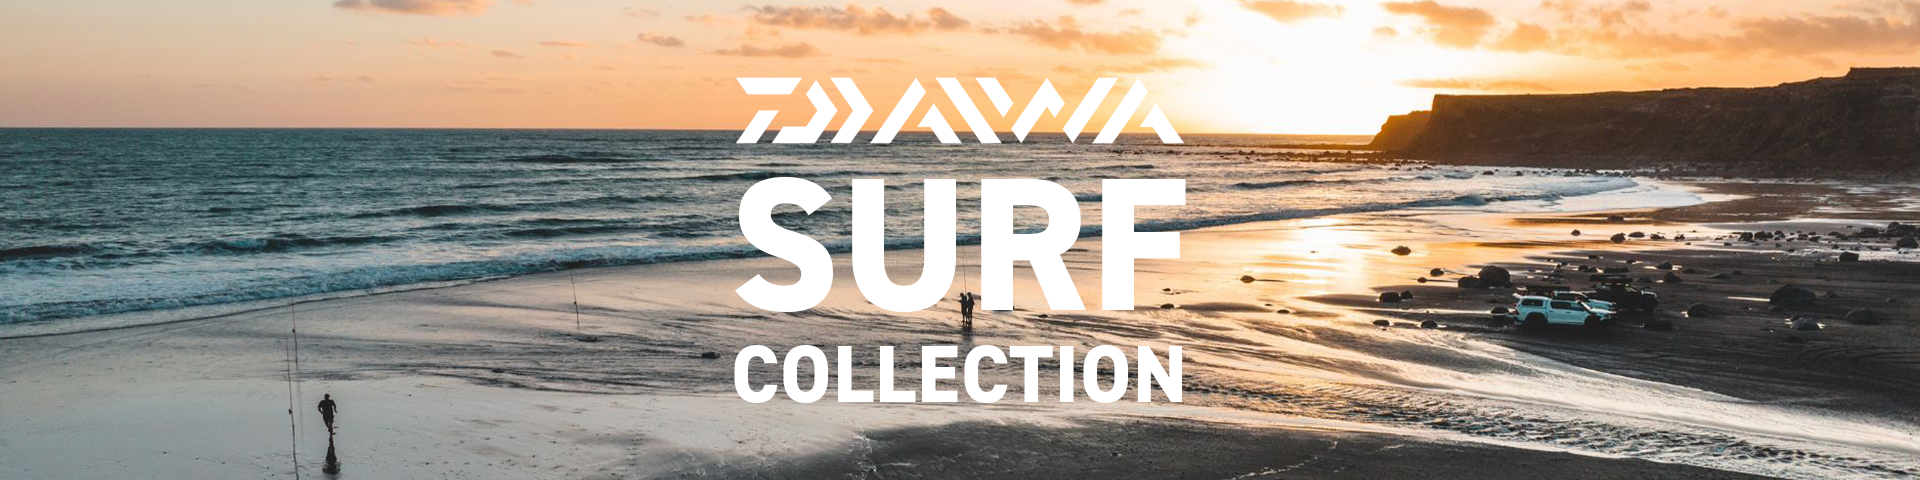 Daiwa Surf – Daiwa NZ